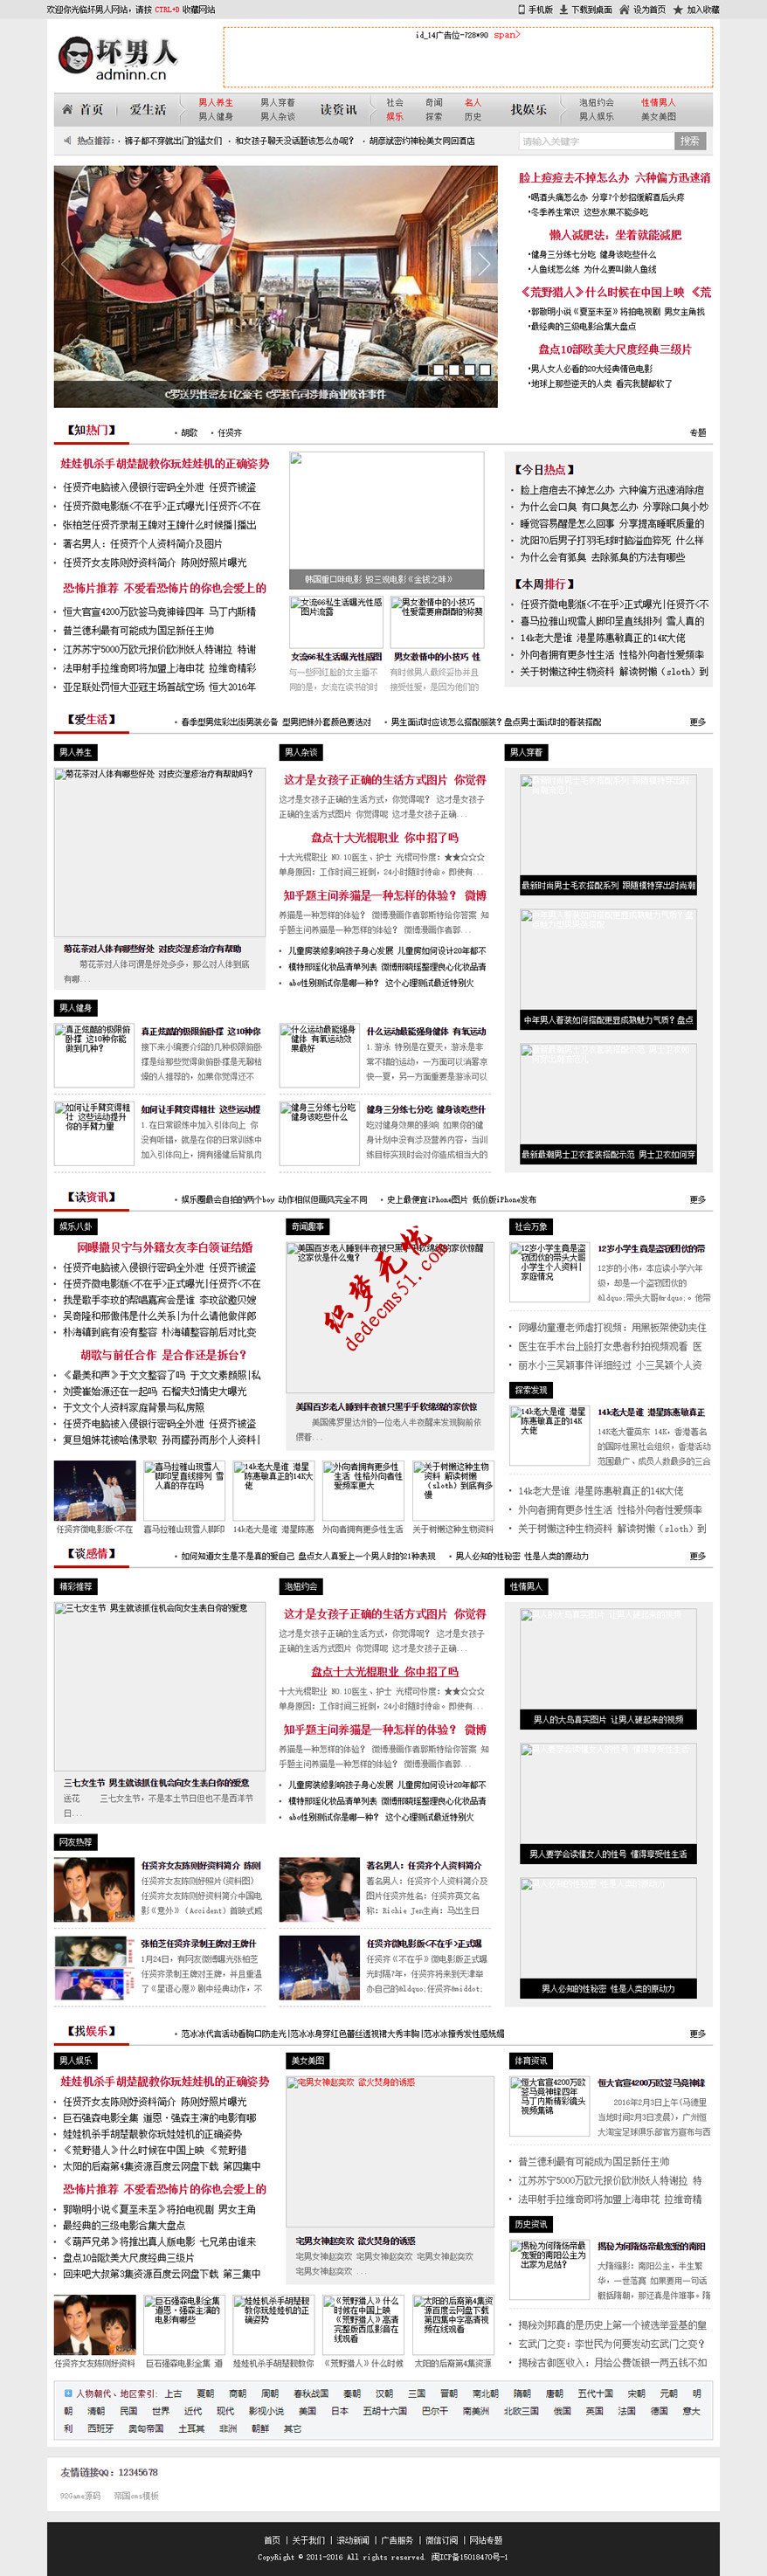 仿【坏男人】帝国CMS7.2新闻文章类网站模板下载带手机版帝国模板下载源码,第1张